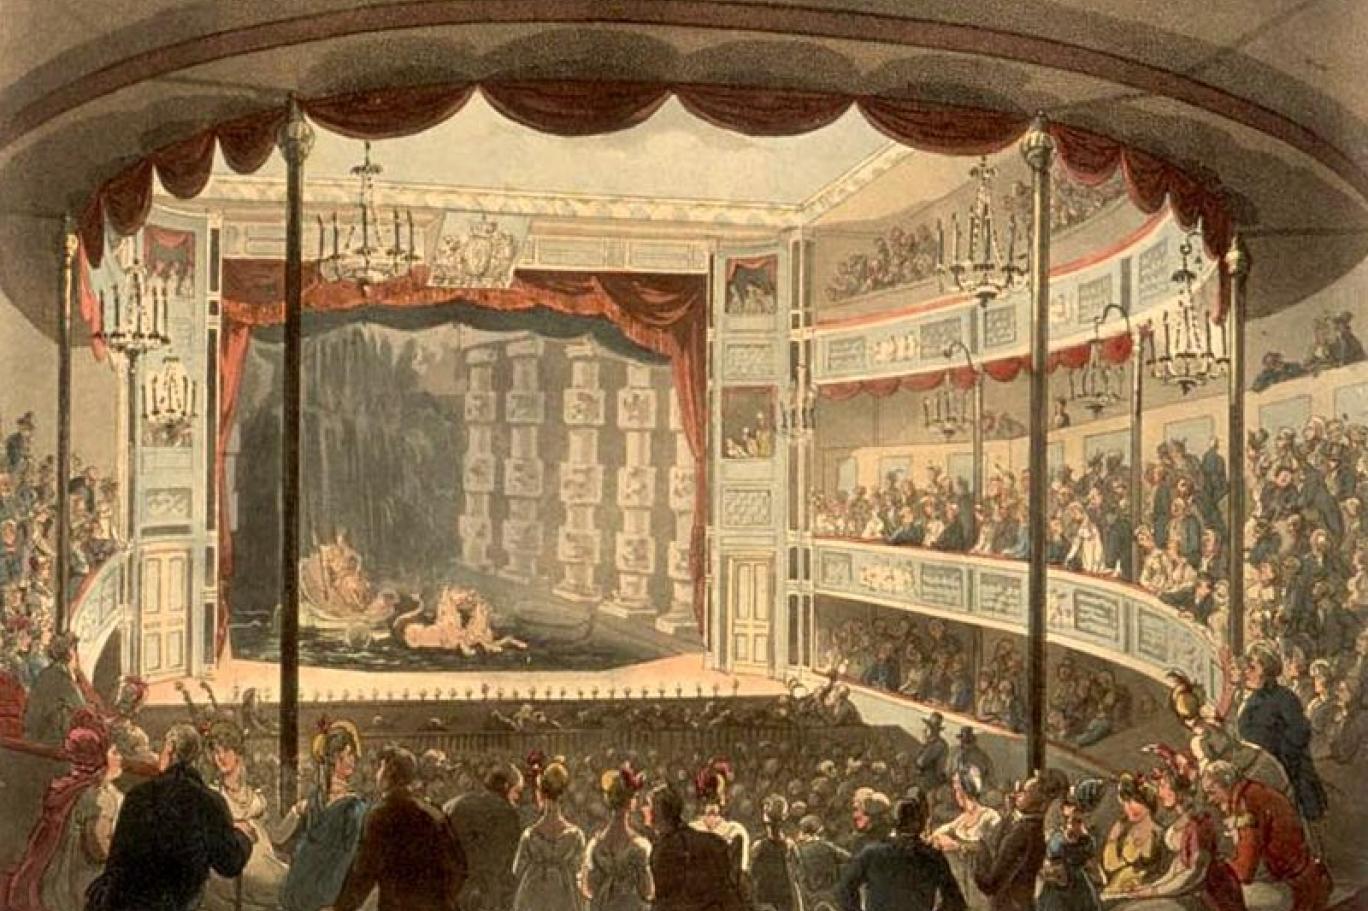 الفرجة في المسرح الإغريقي القديم (المكتبة البريطانية).jpg